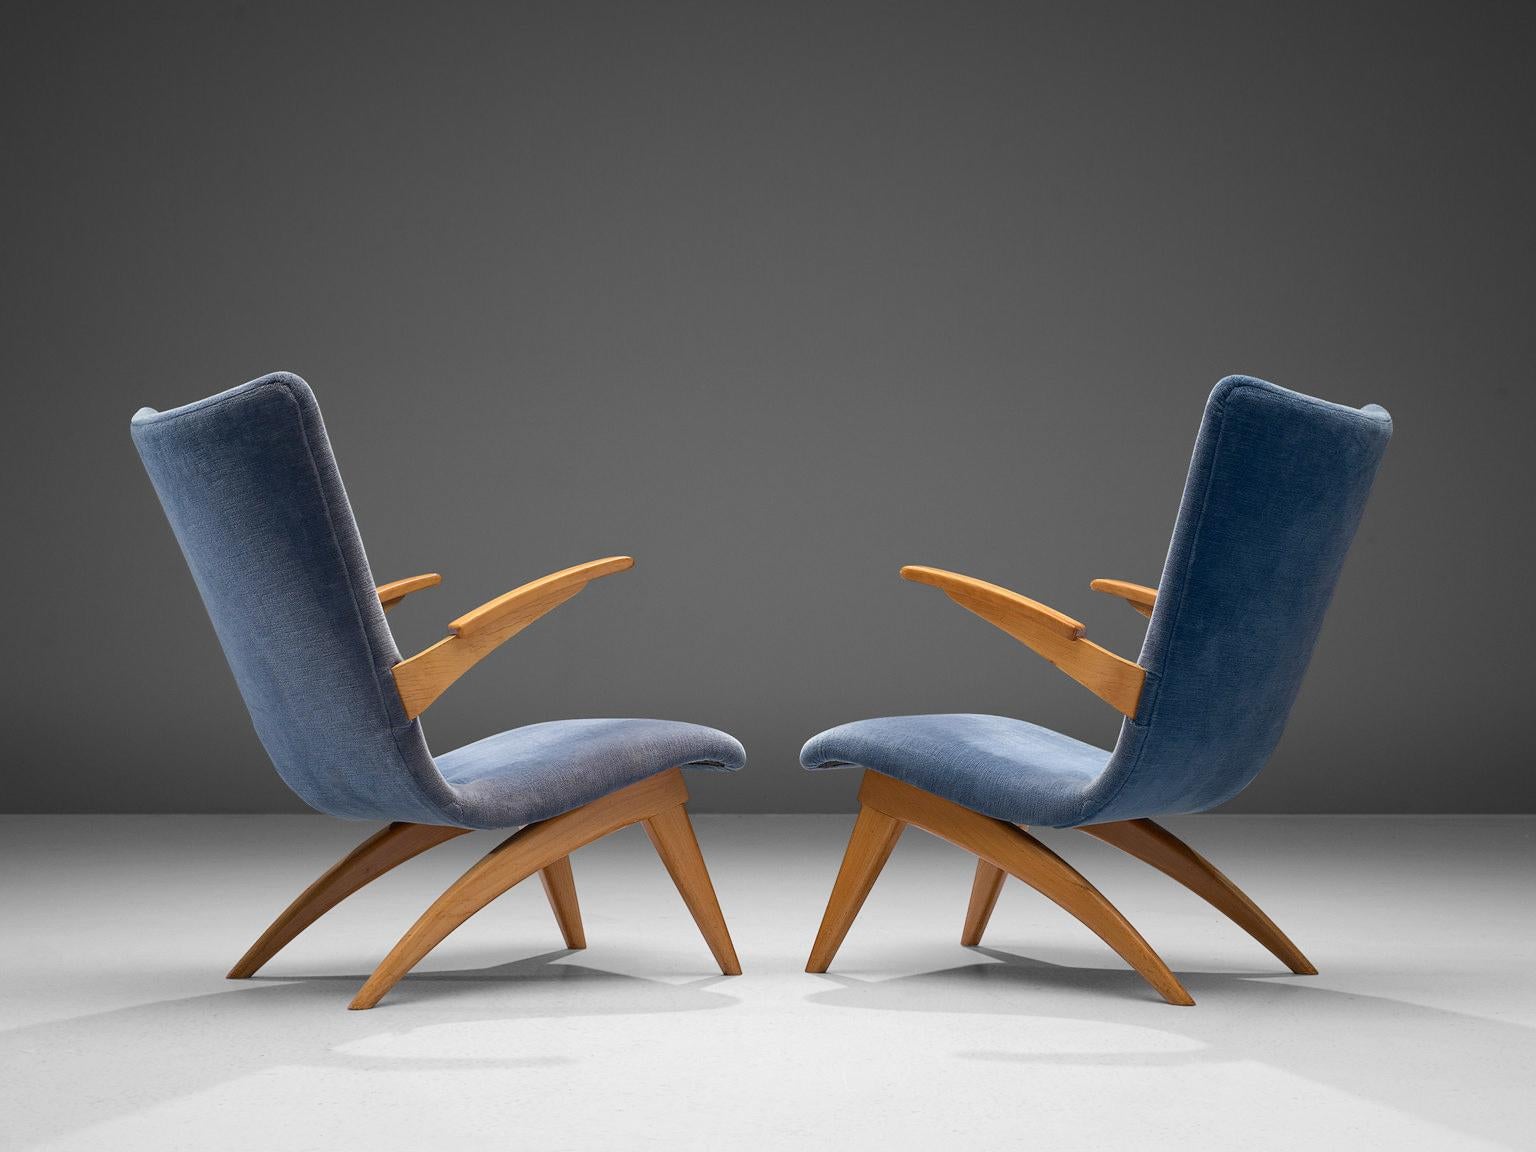 G. Van Os pour Van Os Beeche, paire de fauteuils, hêtre et tissu, Pays-Bas, années 1950.

Cette paire de fauteuils a été conçue par le designer néerlandais G. Van Os dans les années 1950. Ces chaises longues, réalisées en hêtre et en tissu bleu, ont